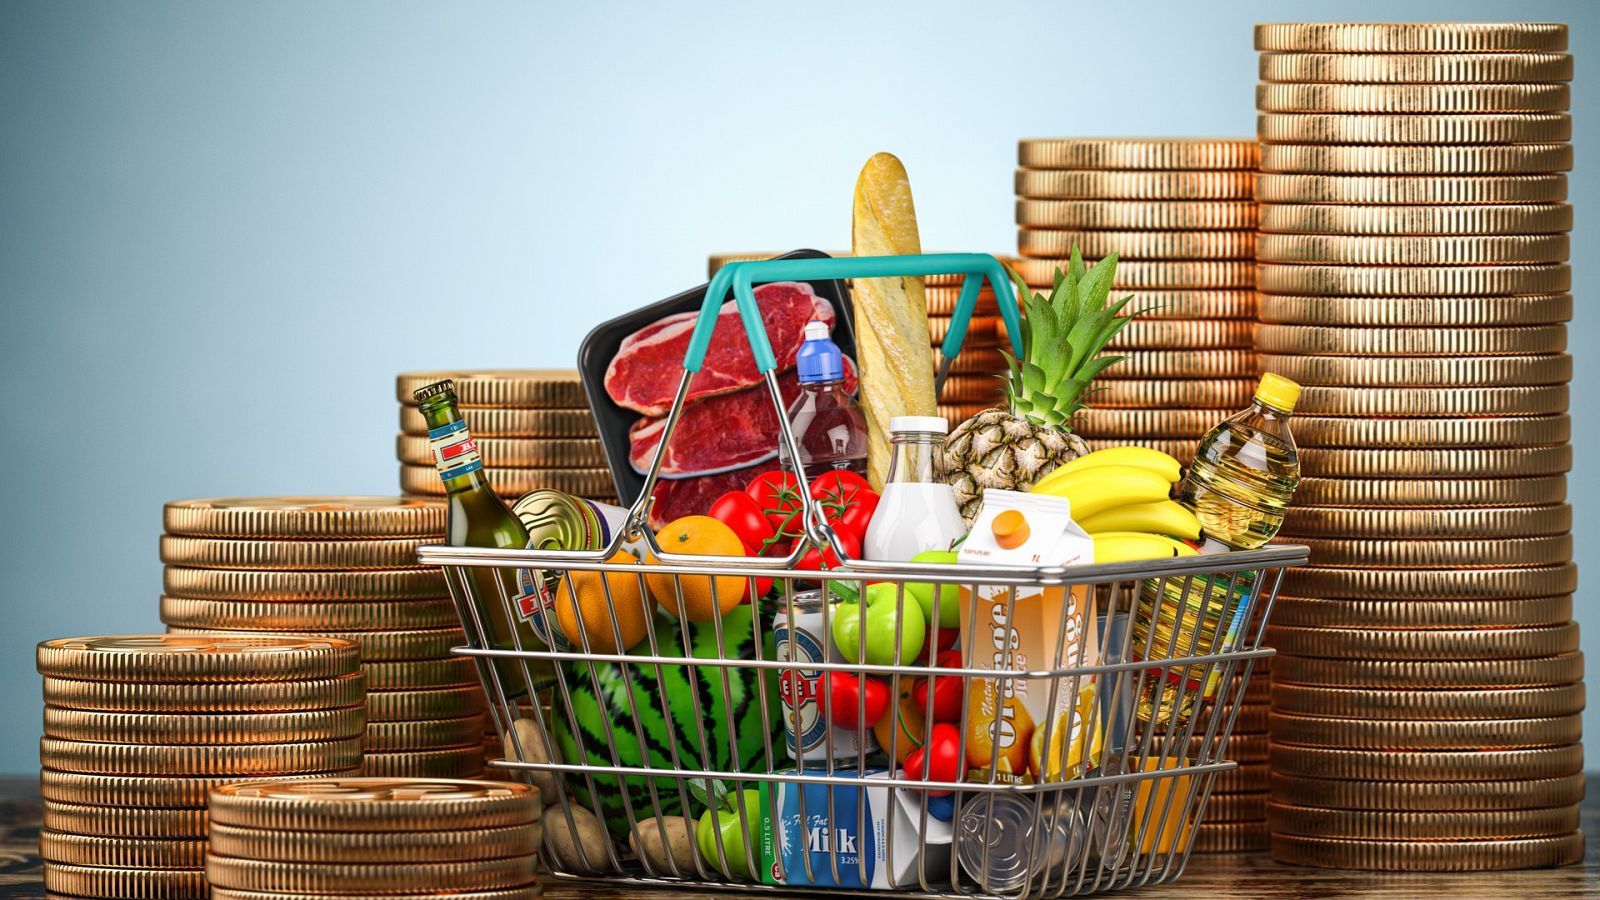 La cesta de la compra se encarece un 15% y registra su mayor subida en 34 años, según la OCU, lo que dificulta la situación económica de las familias.